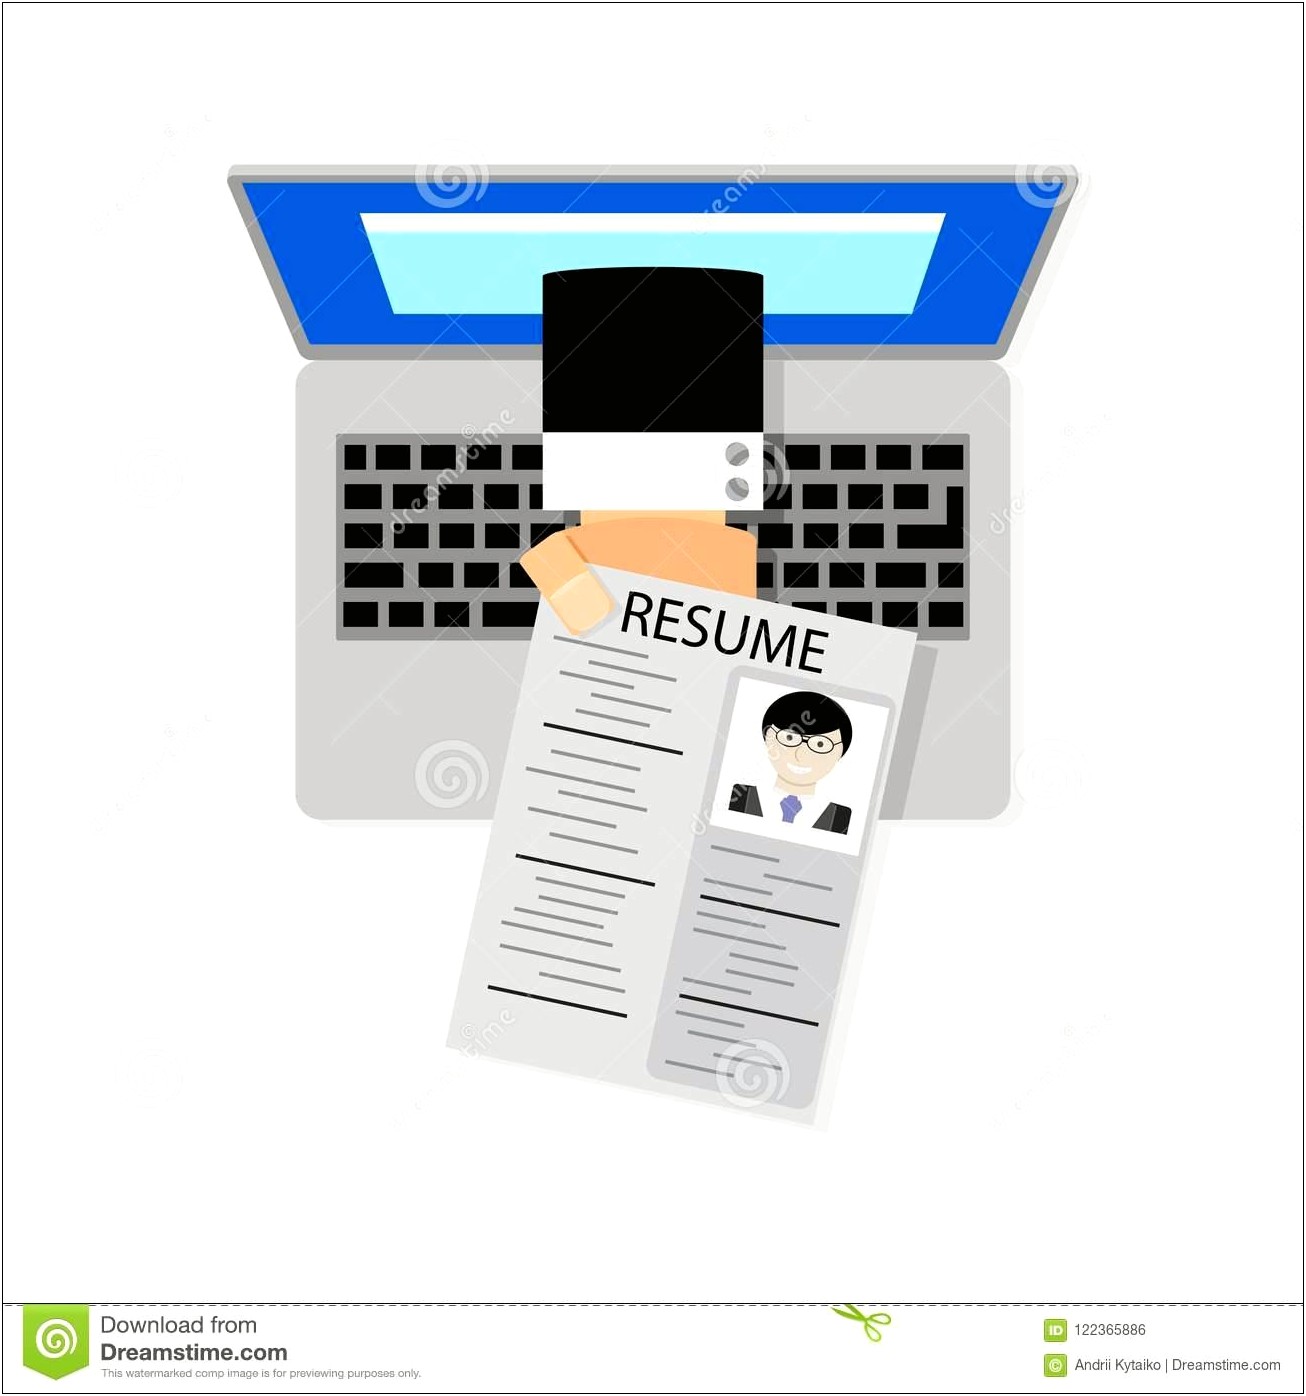 Find A Job Based On Resume